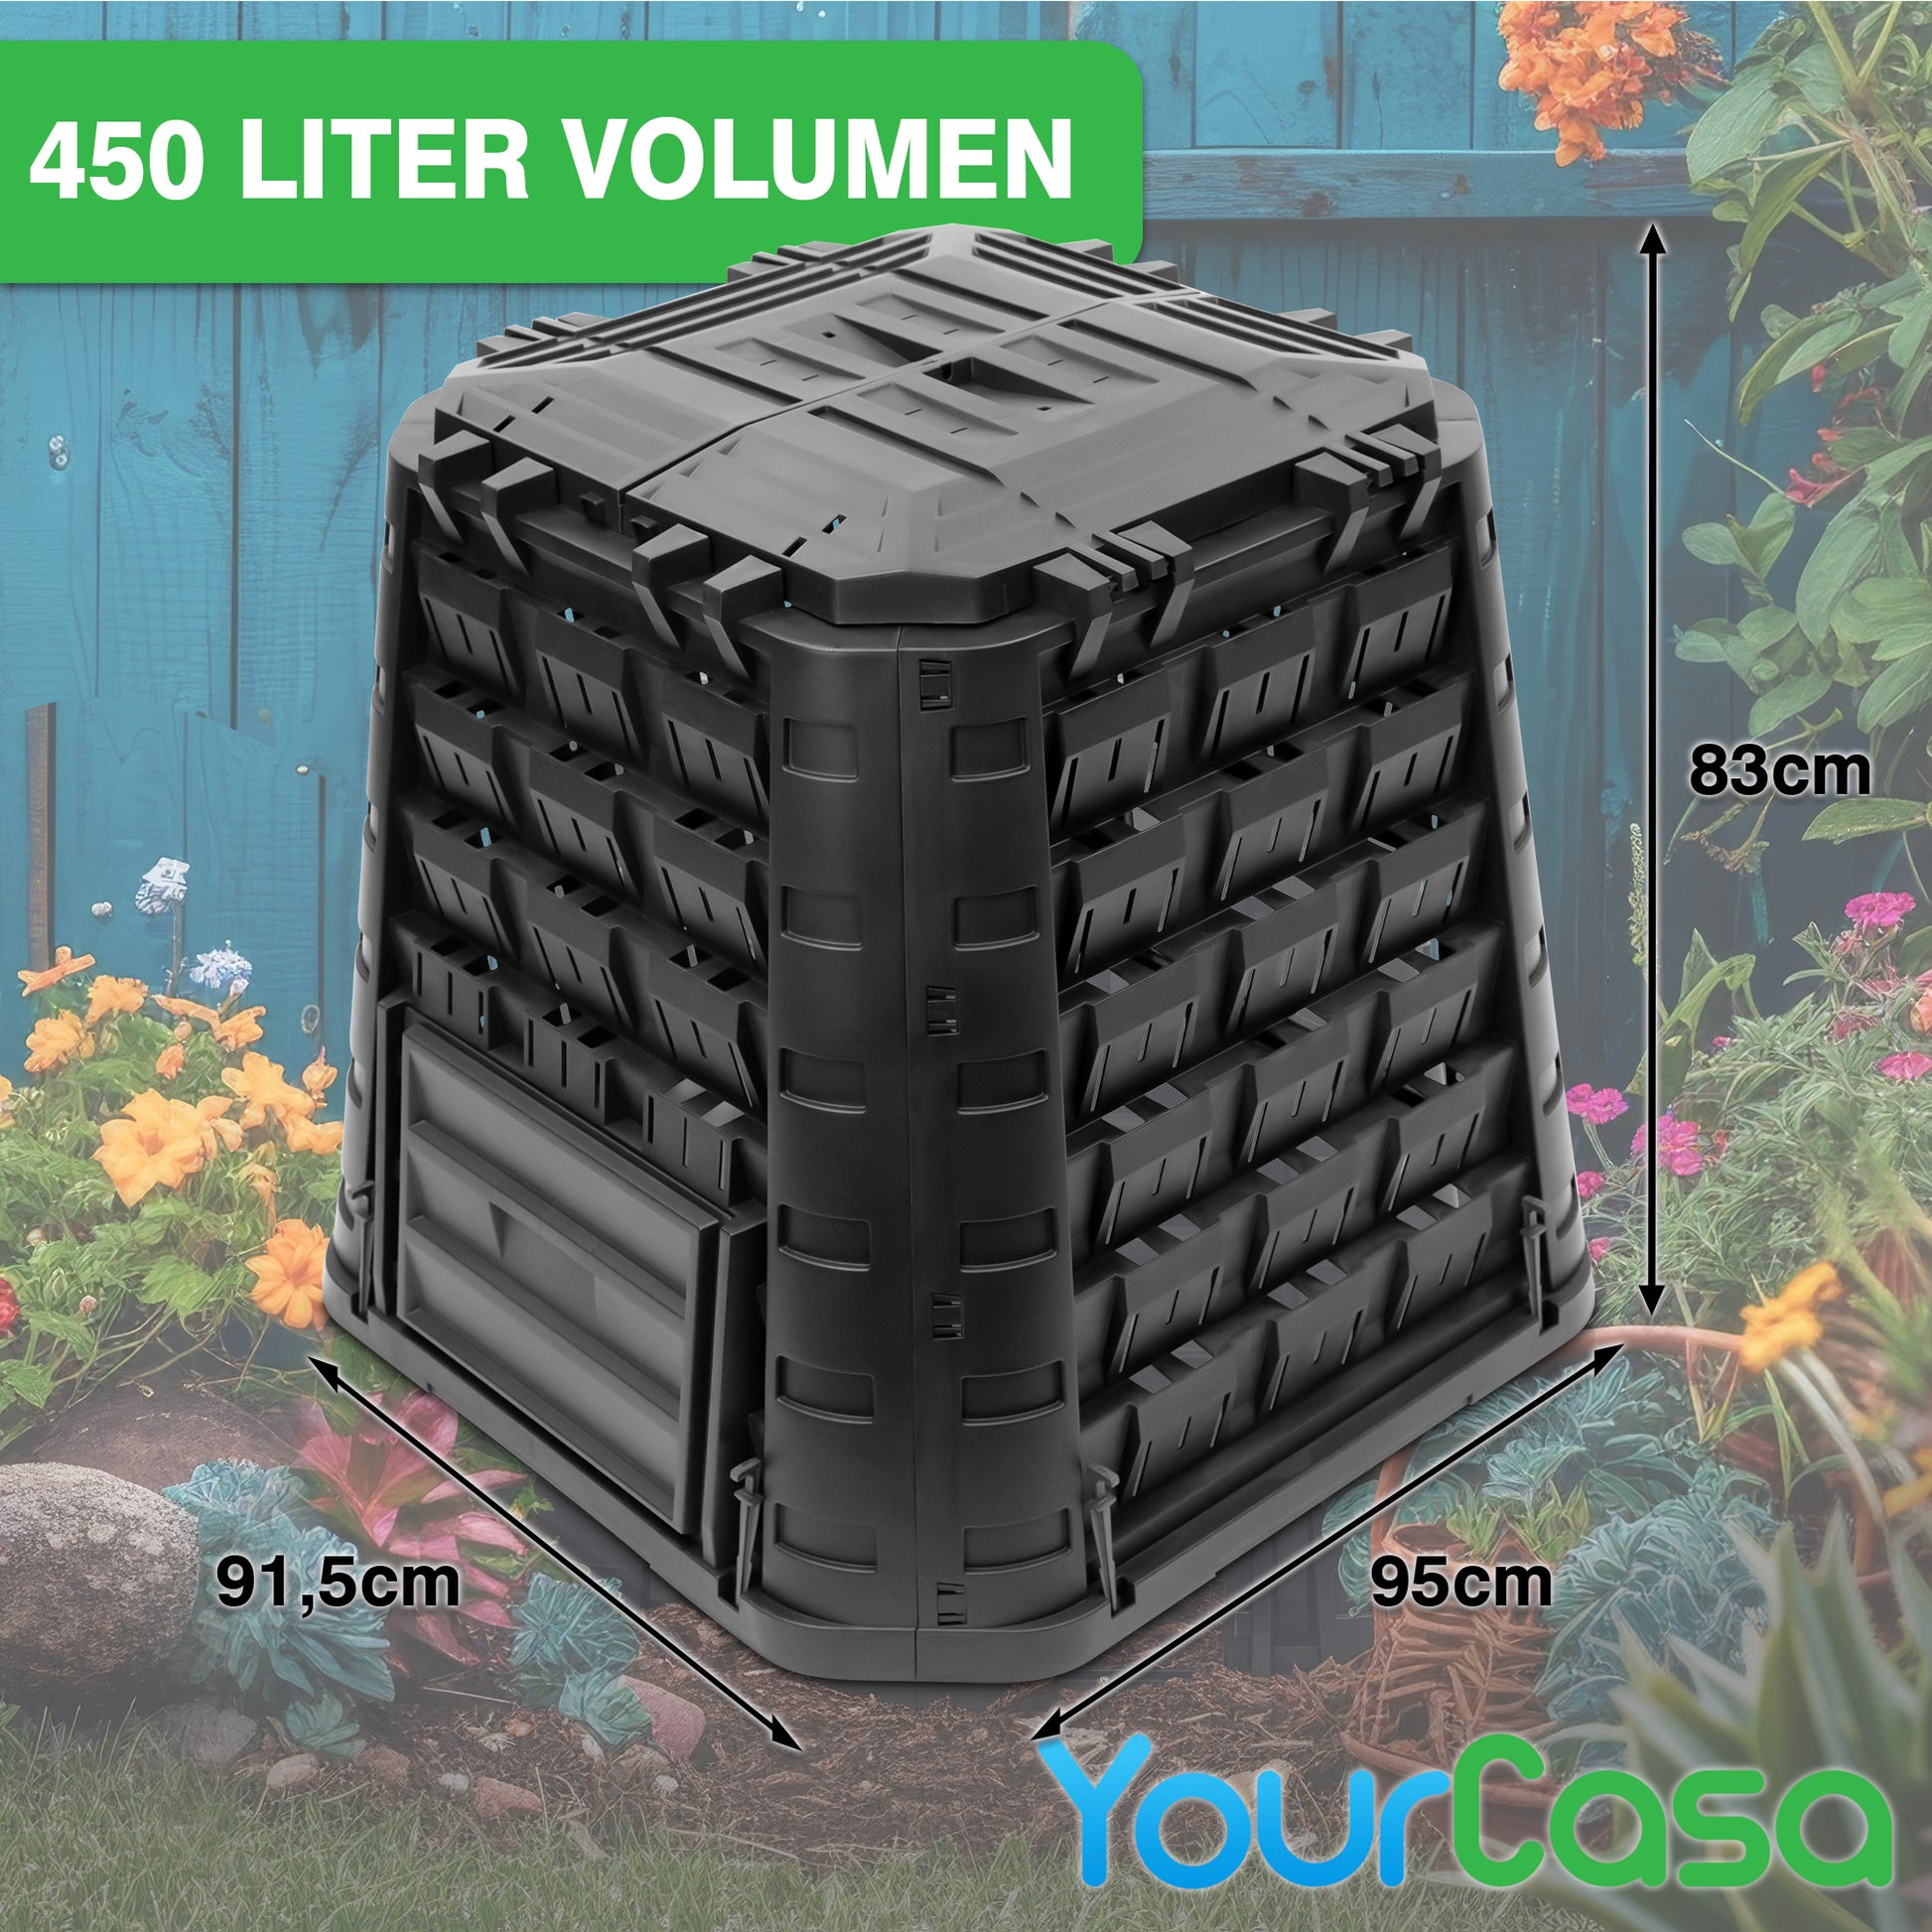 yourcasa-de 450 Liter Volumen – EcoFusion Gartenkomposter für Thermokompostierung.